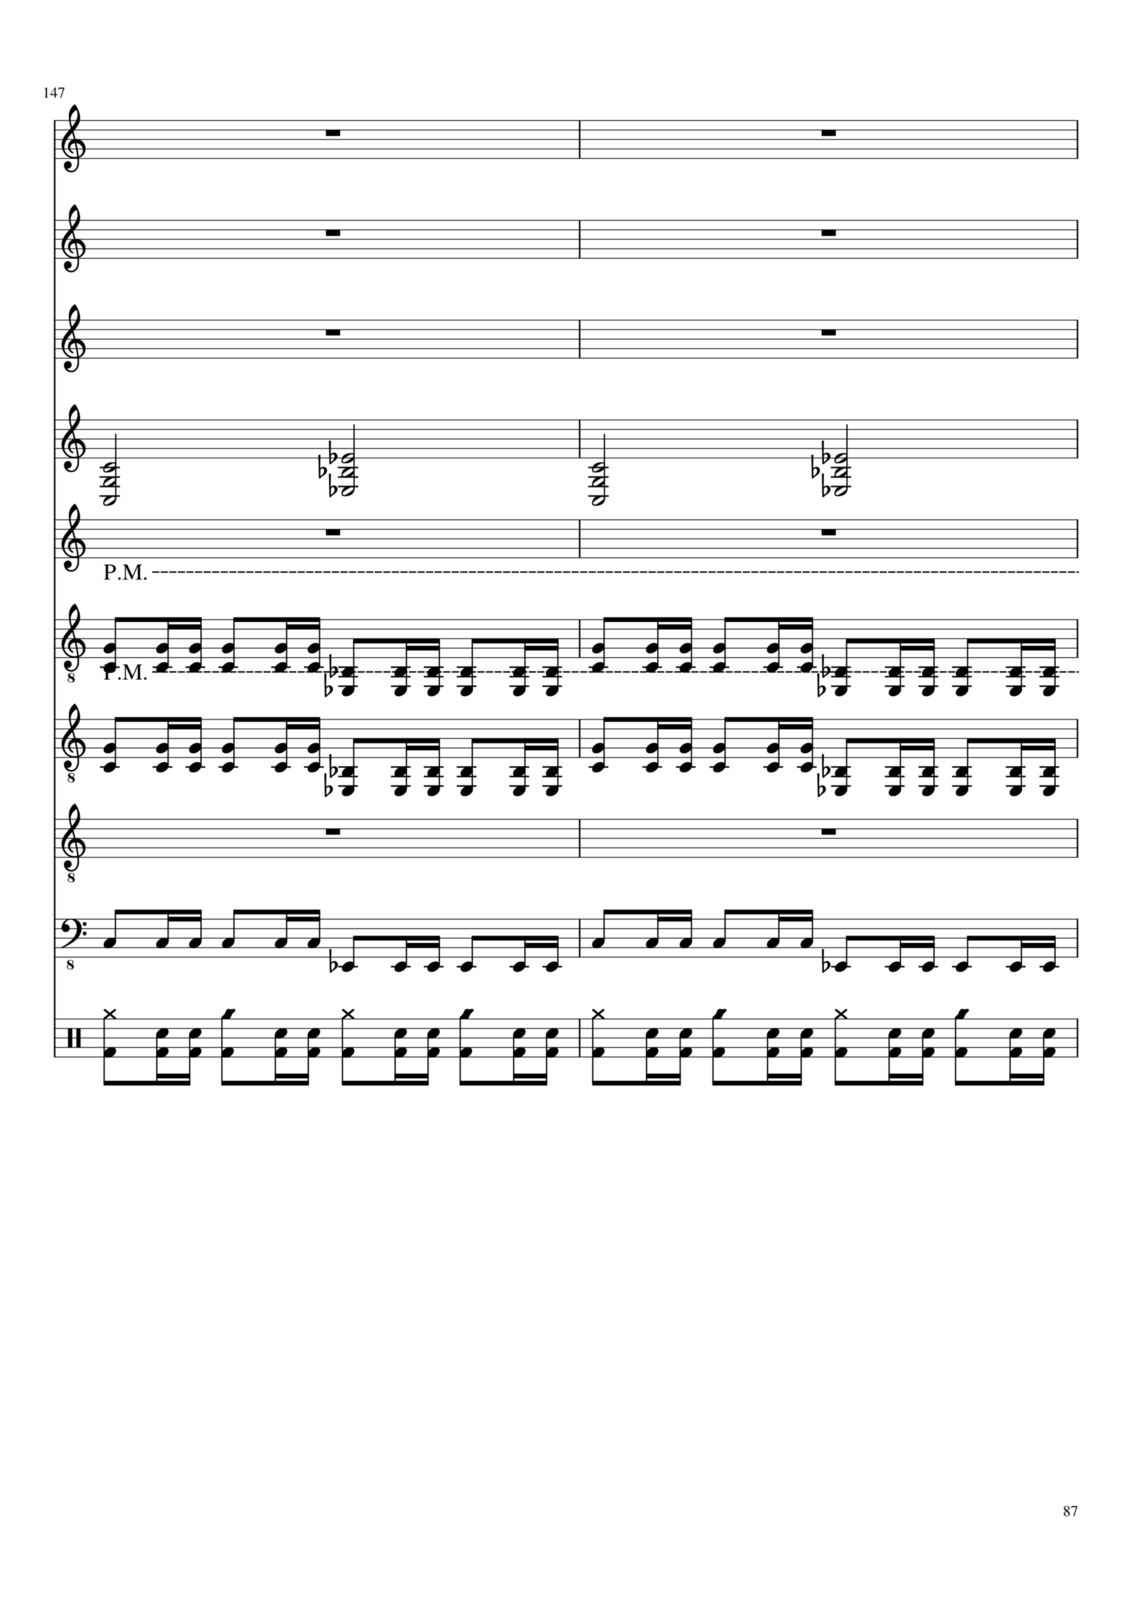 Vechnaya molodost slide, Image 14